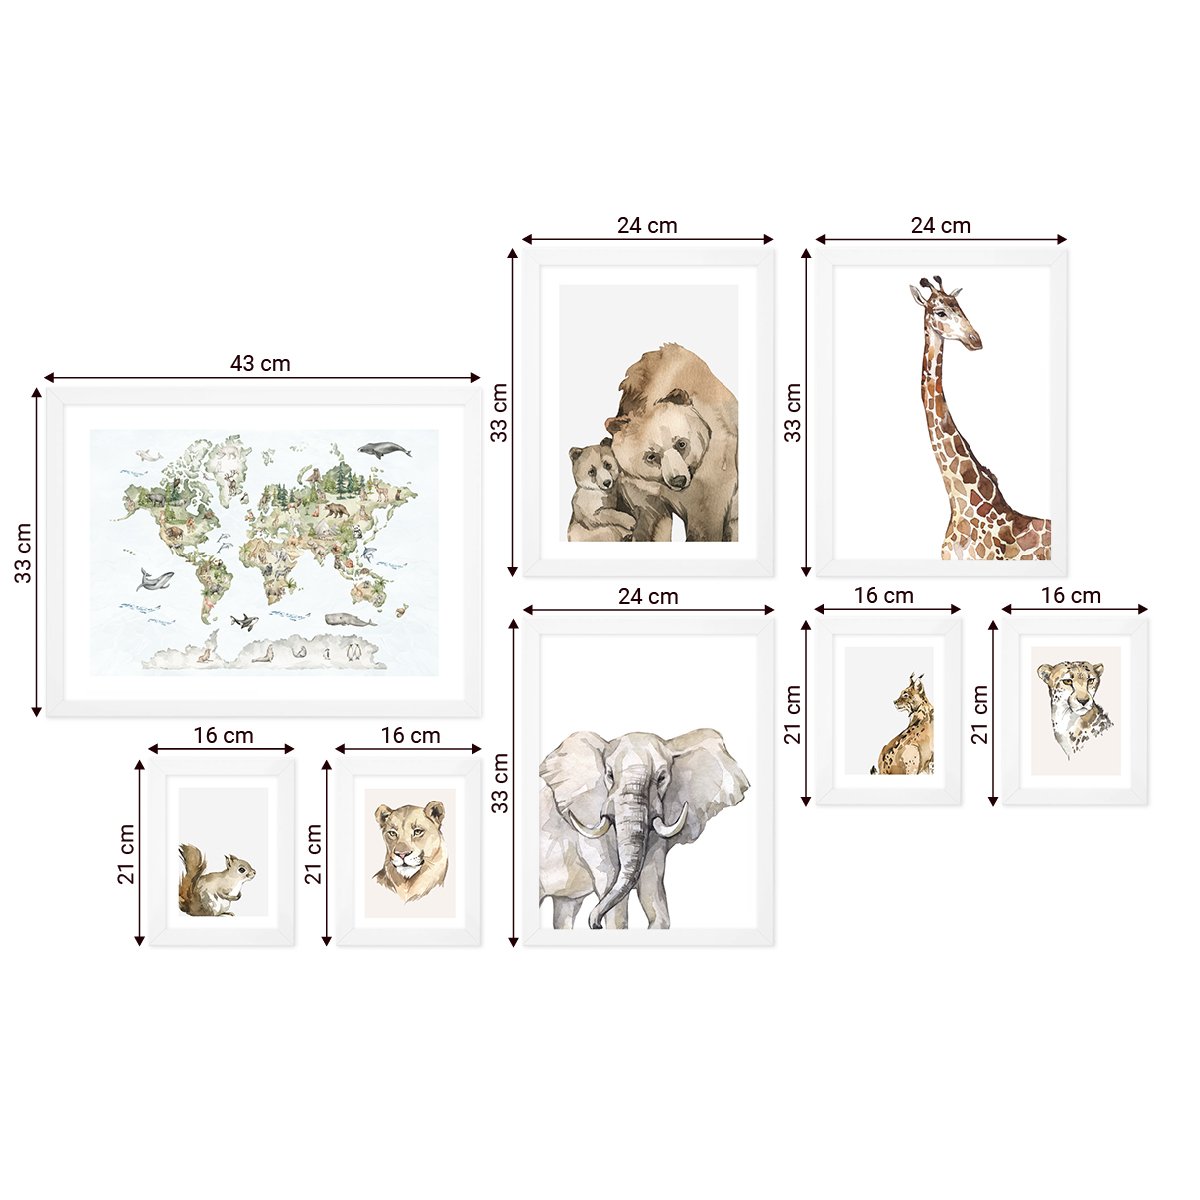 Galeria obrazów dla dzieci - zestaw ośmiu plakatów ze zwierzętami w białych ramkach#ramka_biala